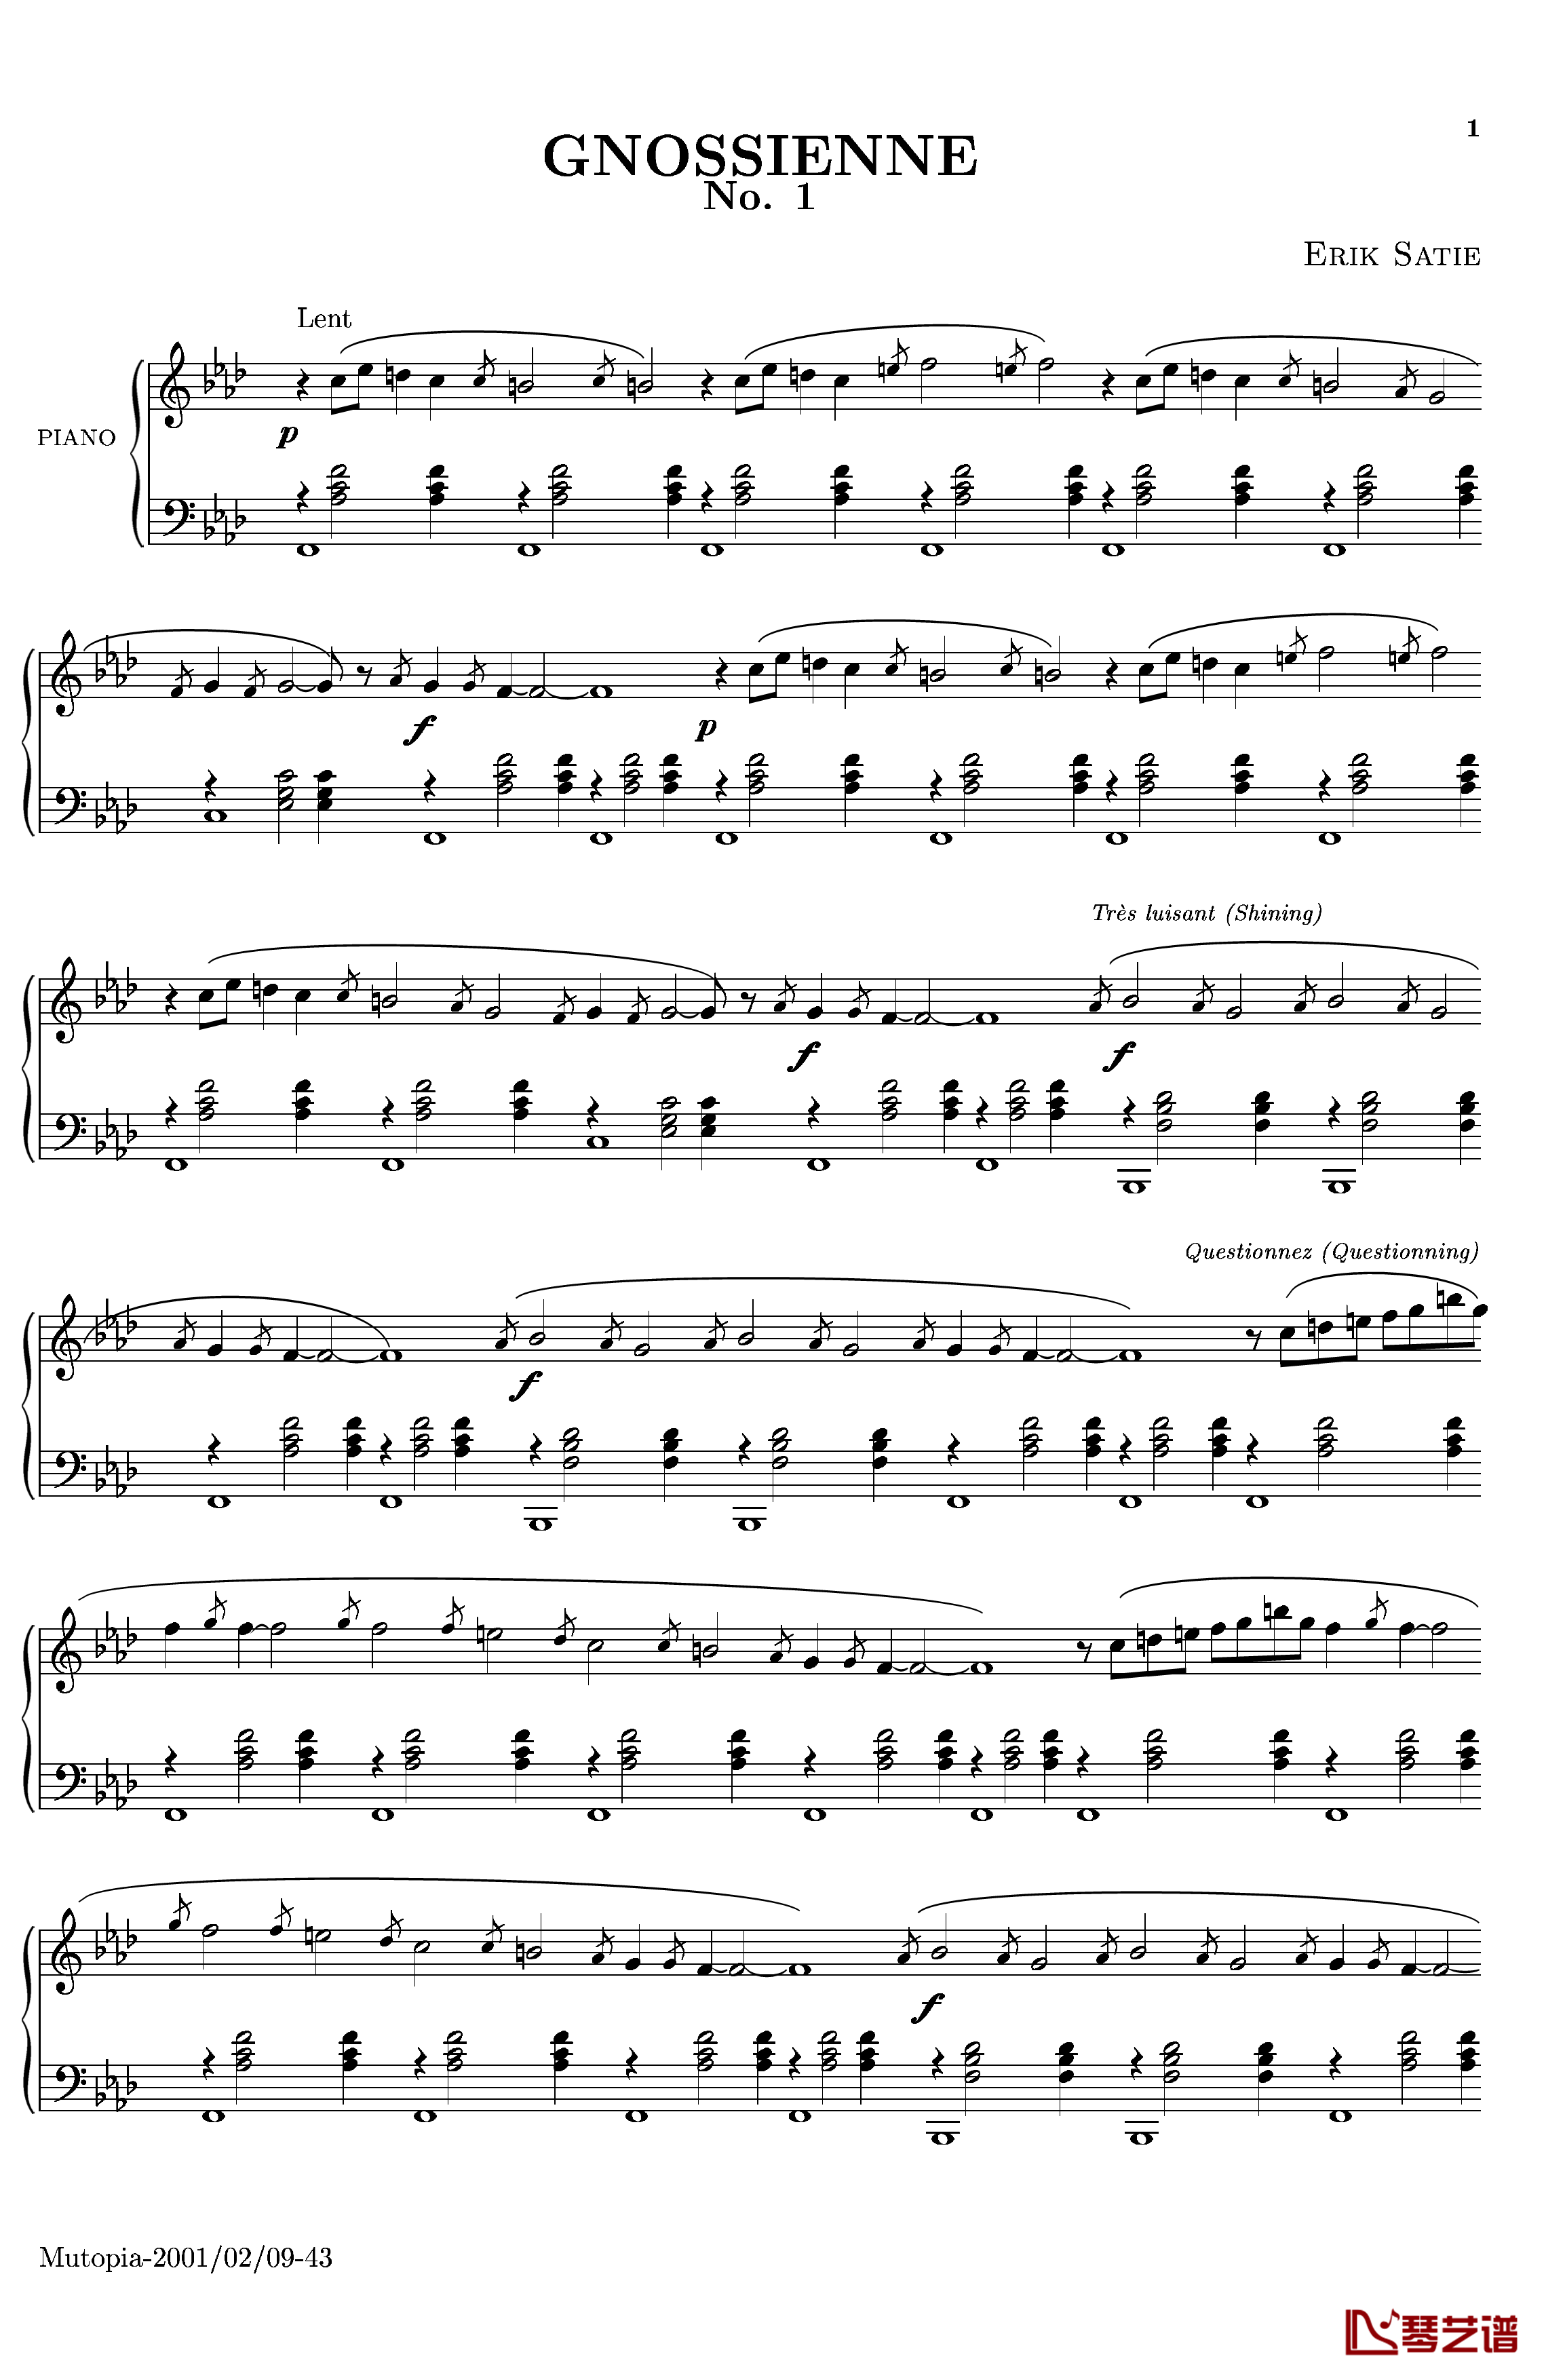 萨蒂玄秘曲钢琴谱 第一首-沙拉萨蒂1